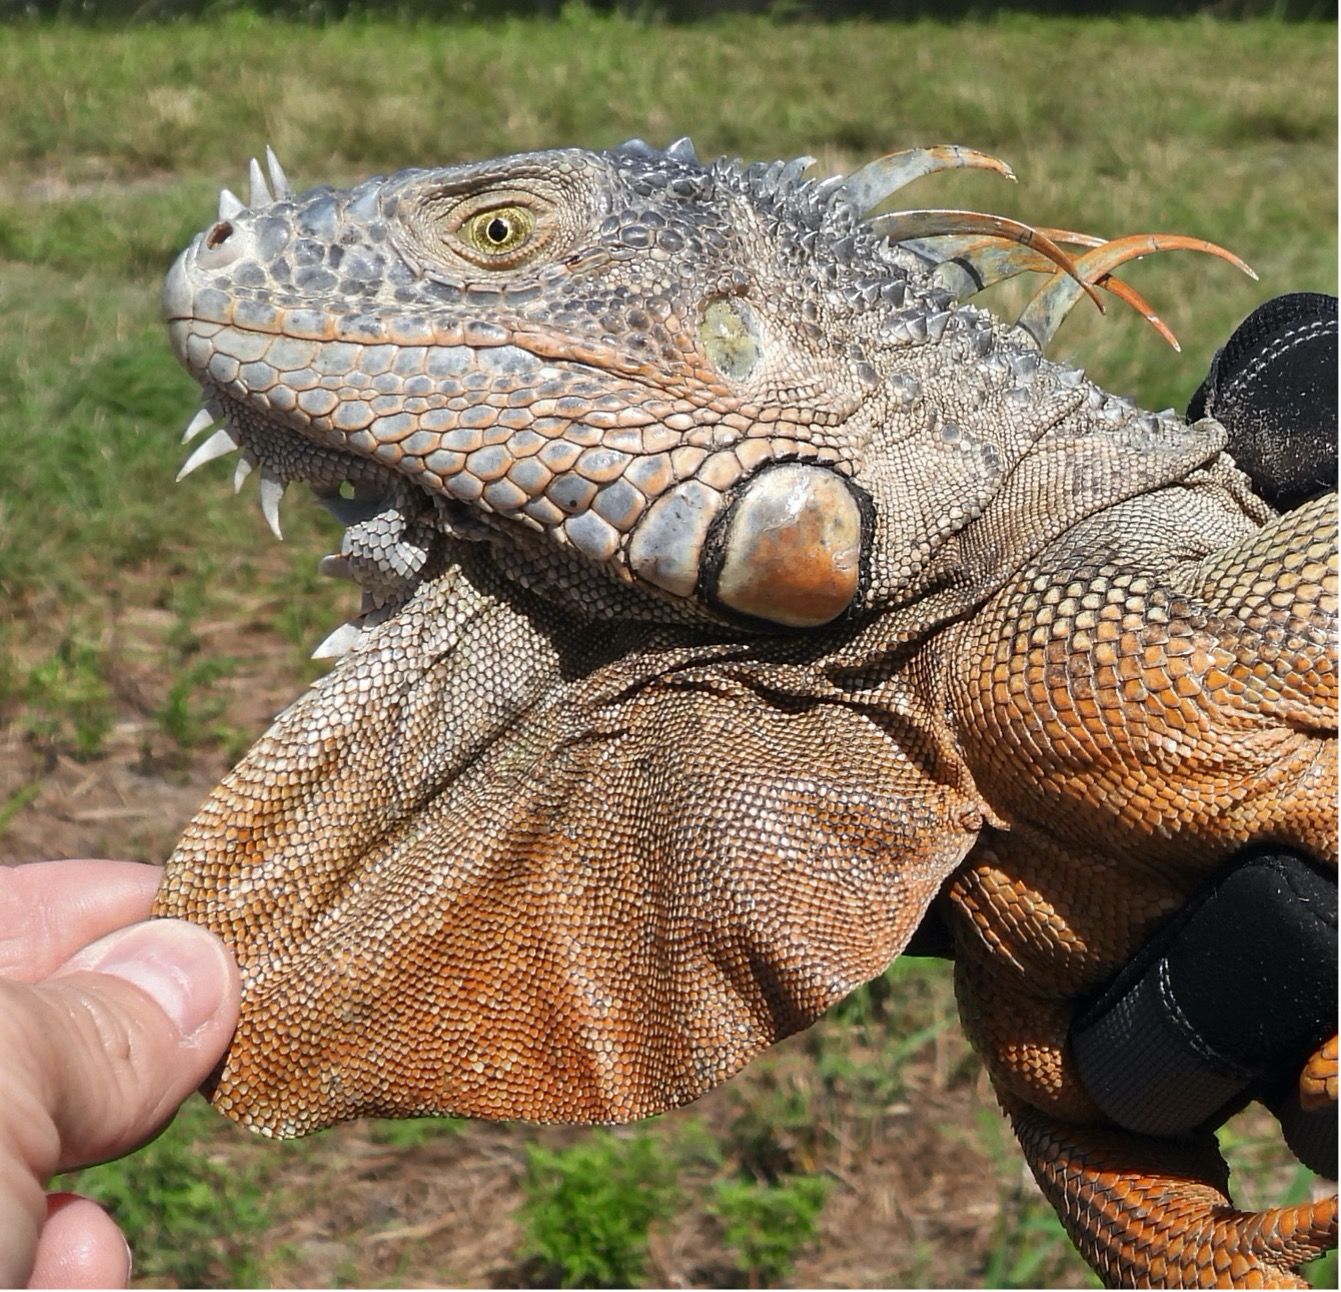 Las iguanas verdes (Iguana iguana) de todas las edades tienen una gran porción de piel que cuelga de la garganta y una escama grande y redonda en la parte posterior de la mandíbula.